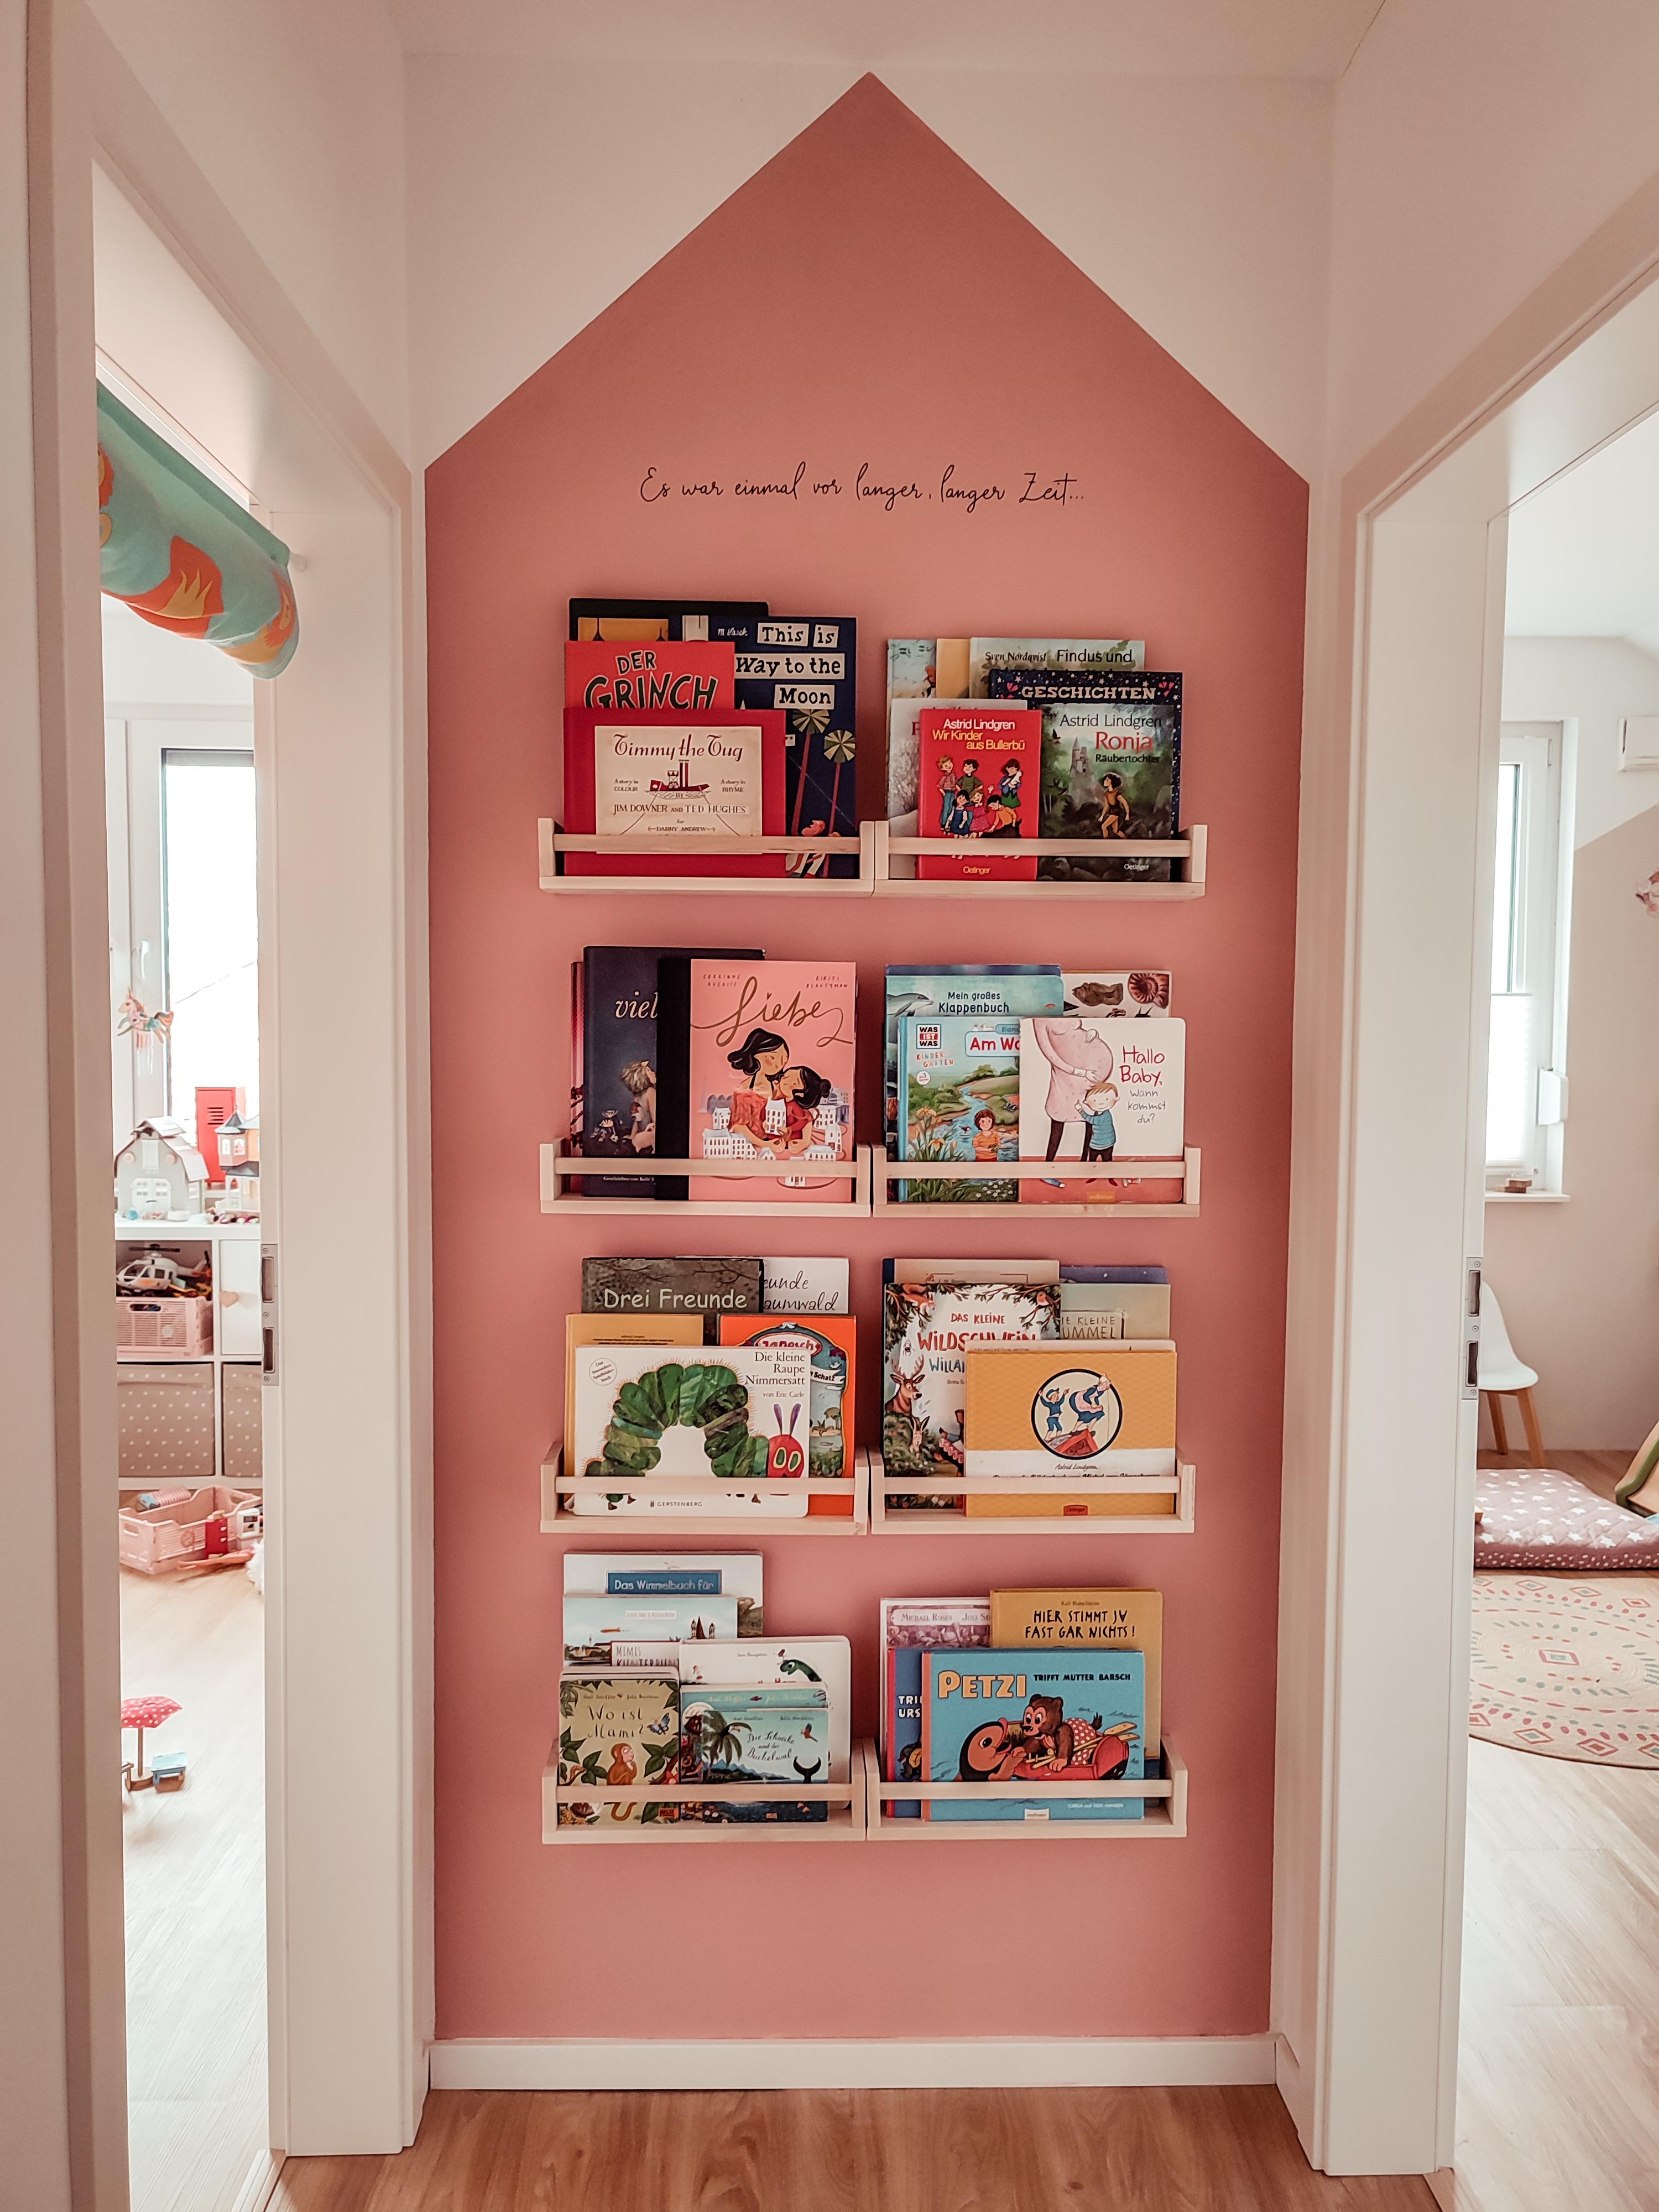 Beide Kinderzimmer verbindet nun eine gemeinsame Bücherwand
#flur #flurdeko #kinderzimmer #girlsroom #mädchenzimmer 